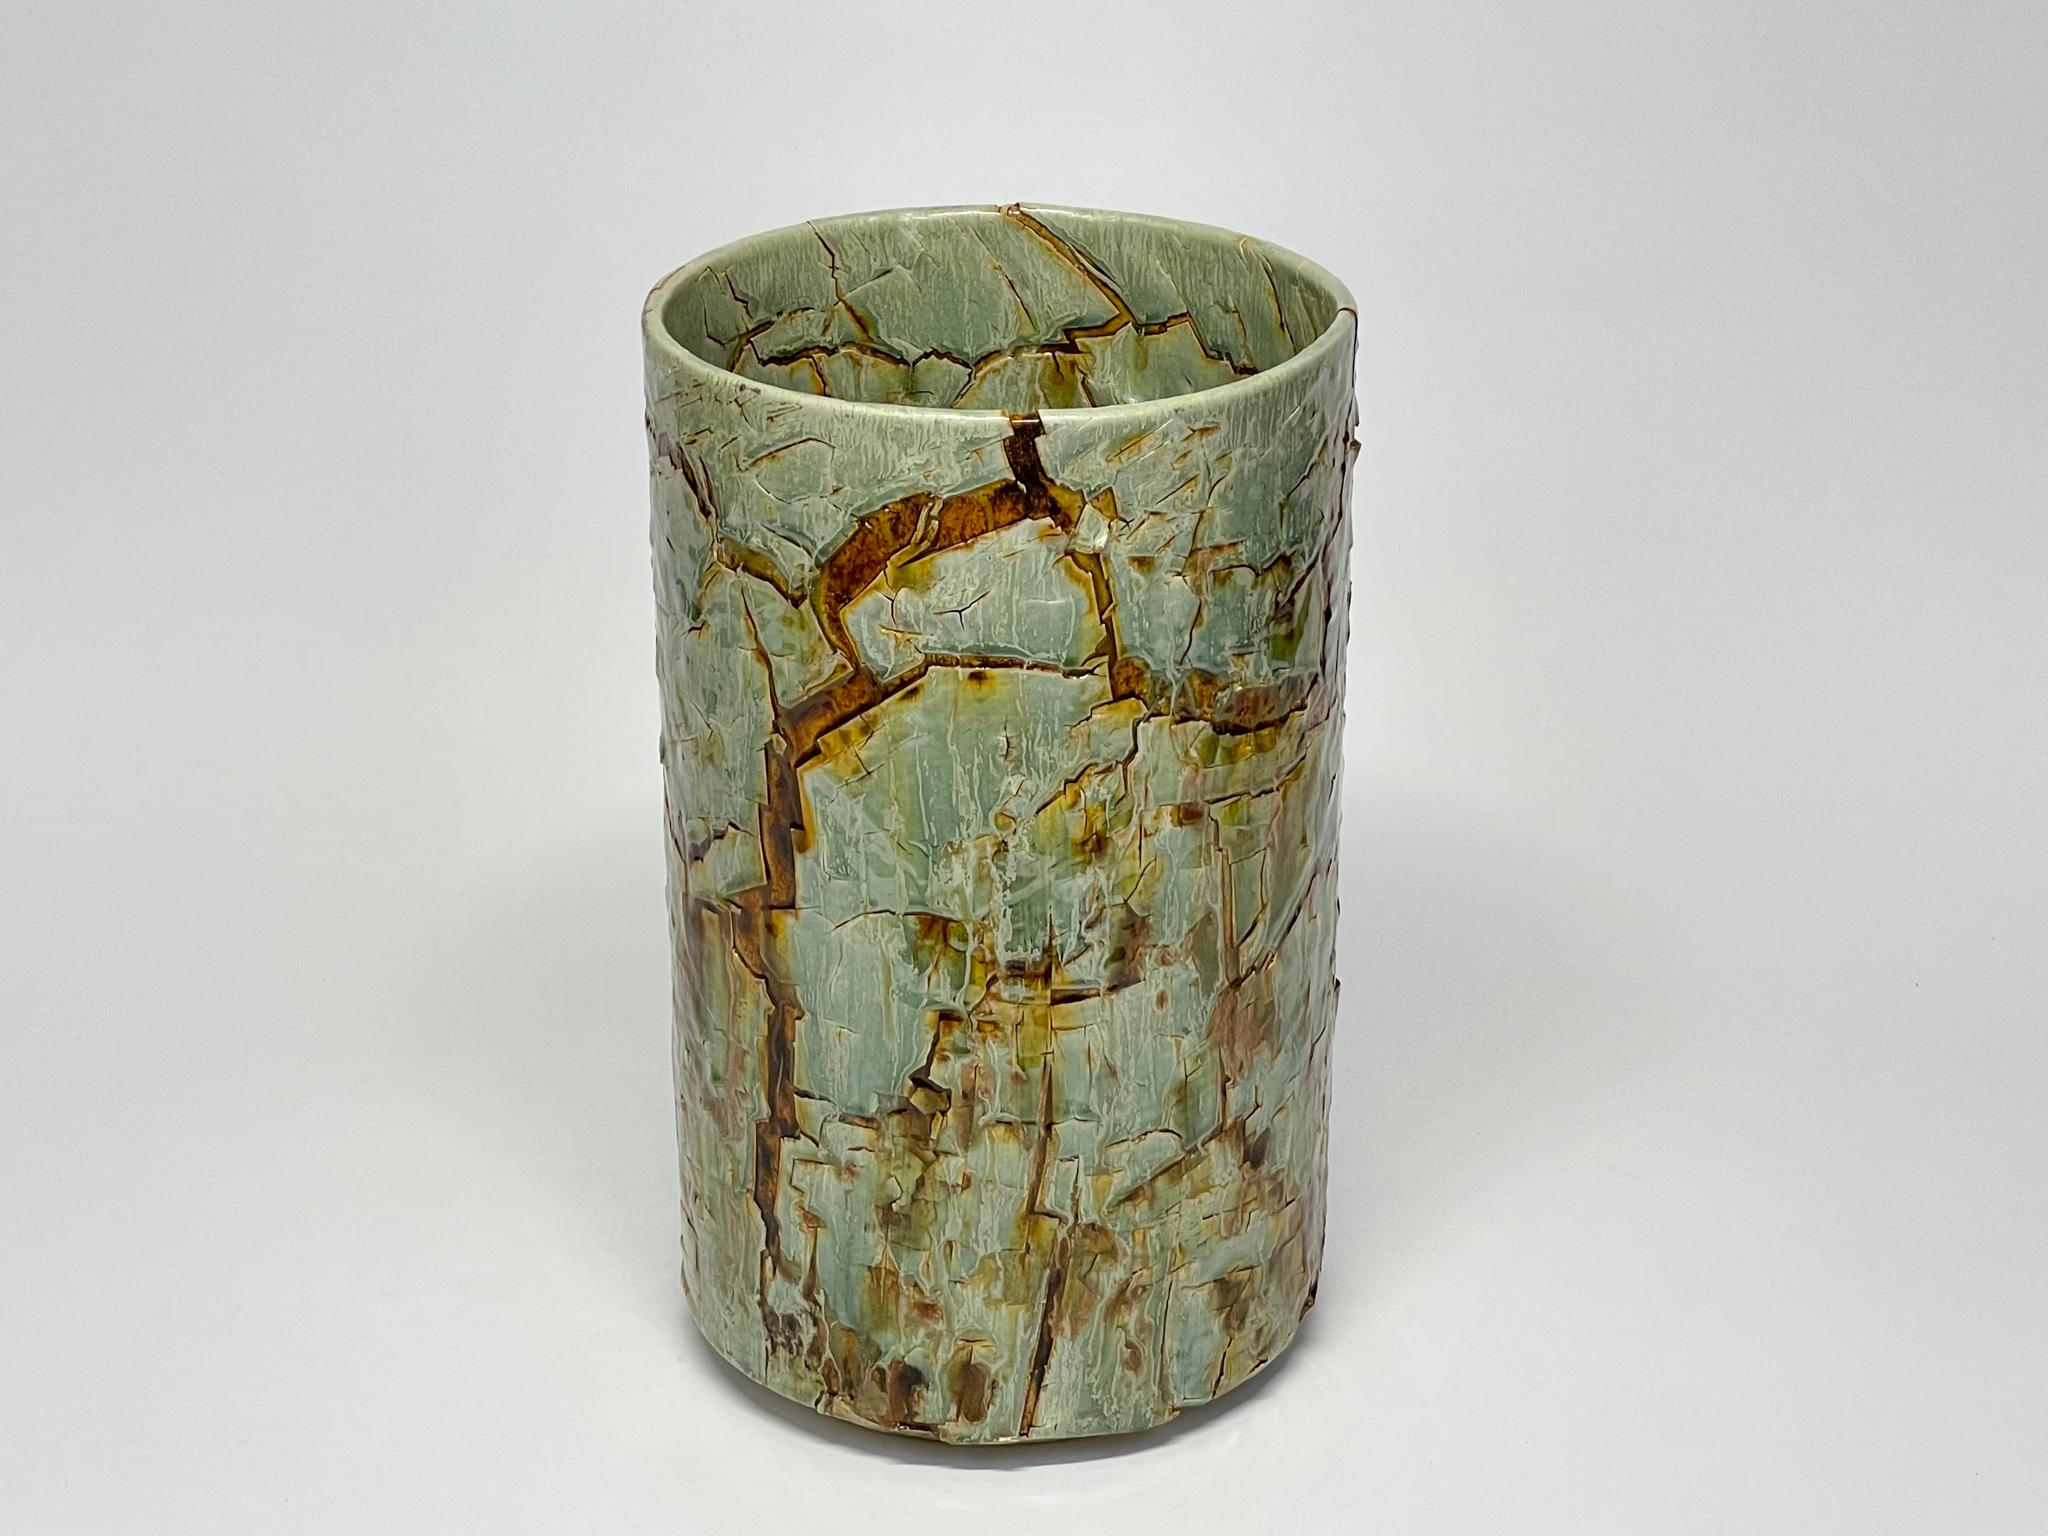 Zylindrische glasierte Keramikskulptur von William Edwards
Handgefertigtes, dekoratives Steingutgefäß, das mehrfach gebrannt wurde, um eine strukturierte Oberfläche von zufälliger Abstraktion zu erhalten, in Seladon-Grüntönen mit bernsteinfarbener